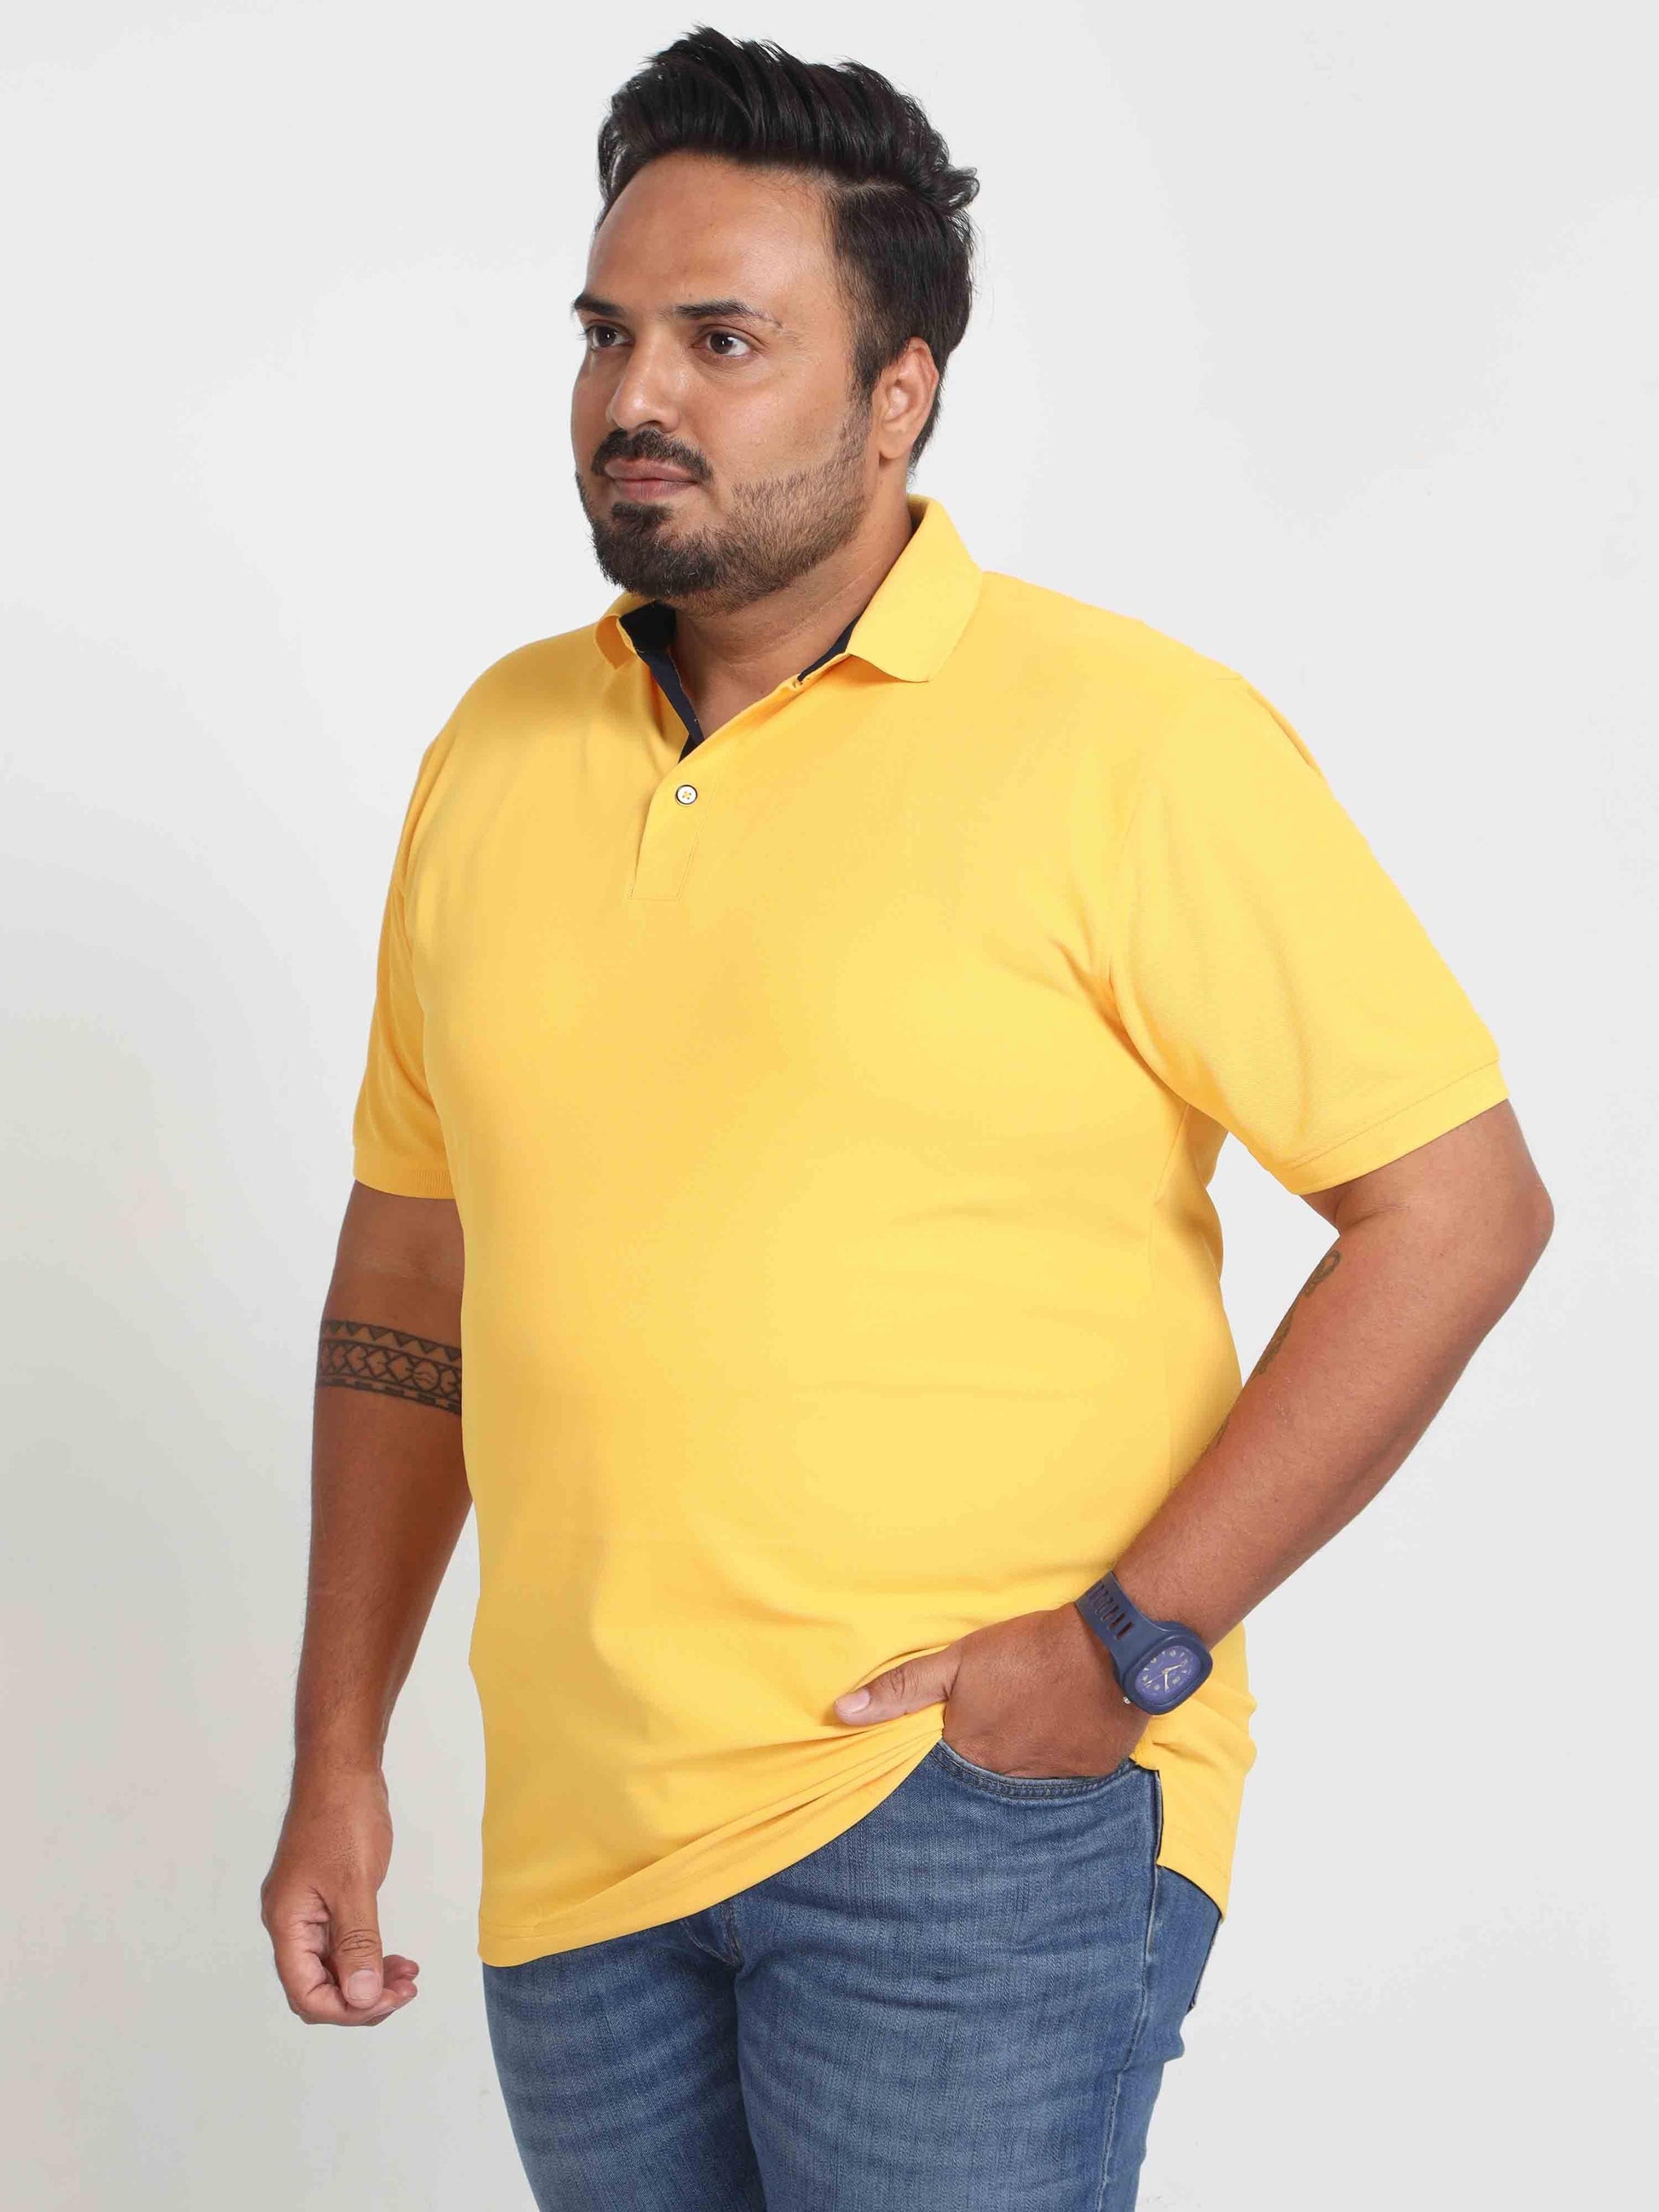 Plus Size Banana Yellow Men's Polo T-shirt